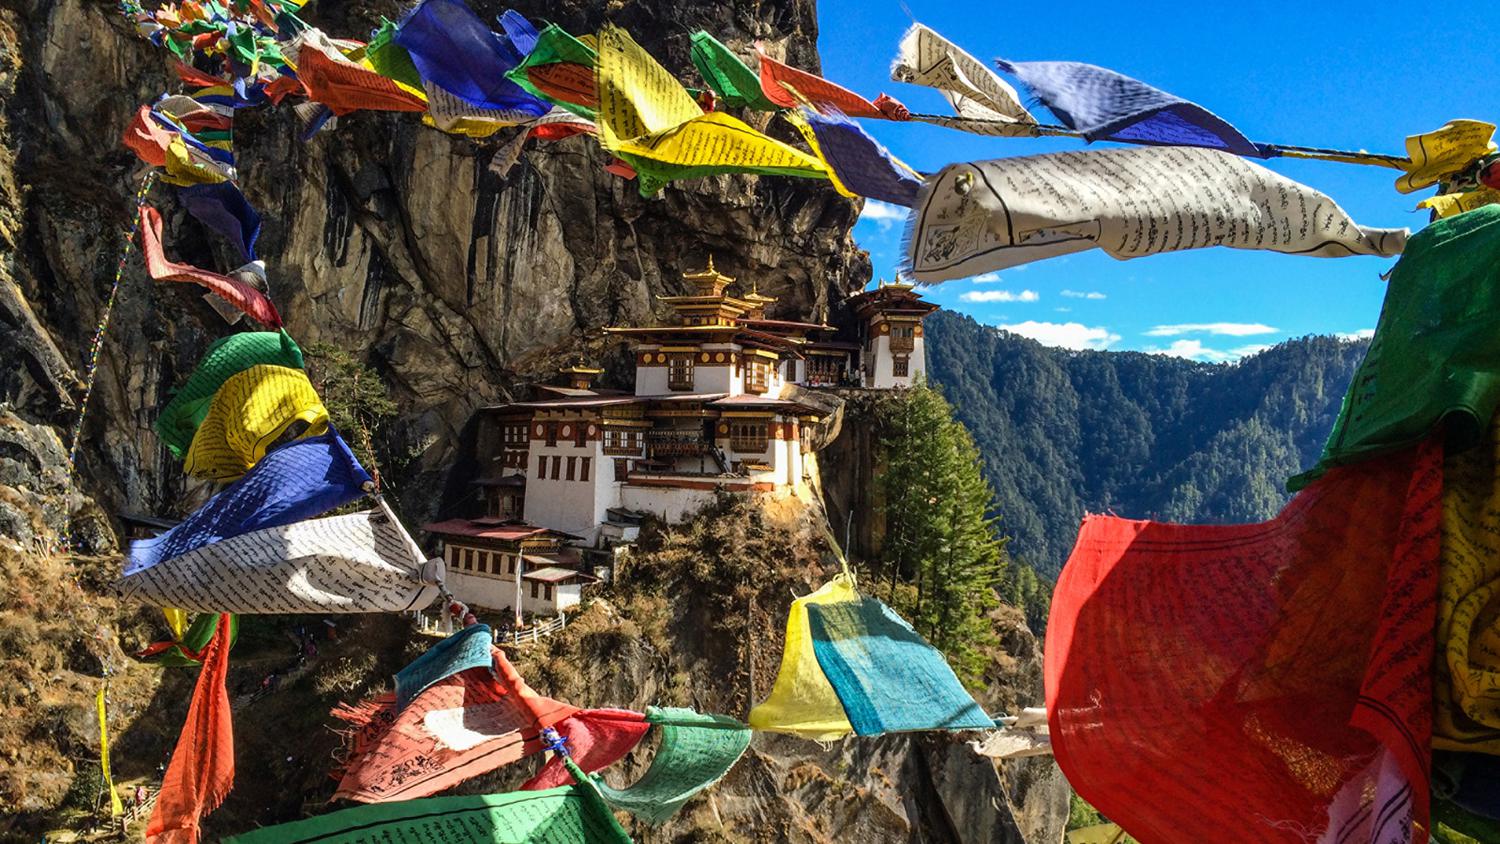 Тур Asia Unveiled включает посещение монастыря &laquo;Логово тигра&raquo; в Бутане